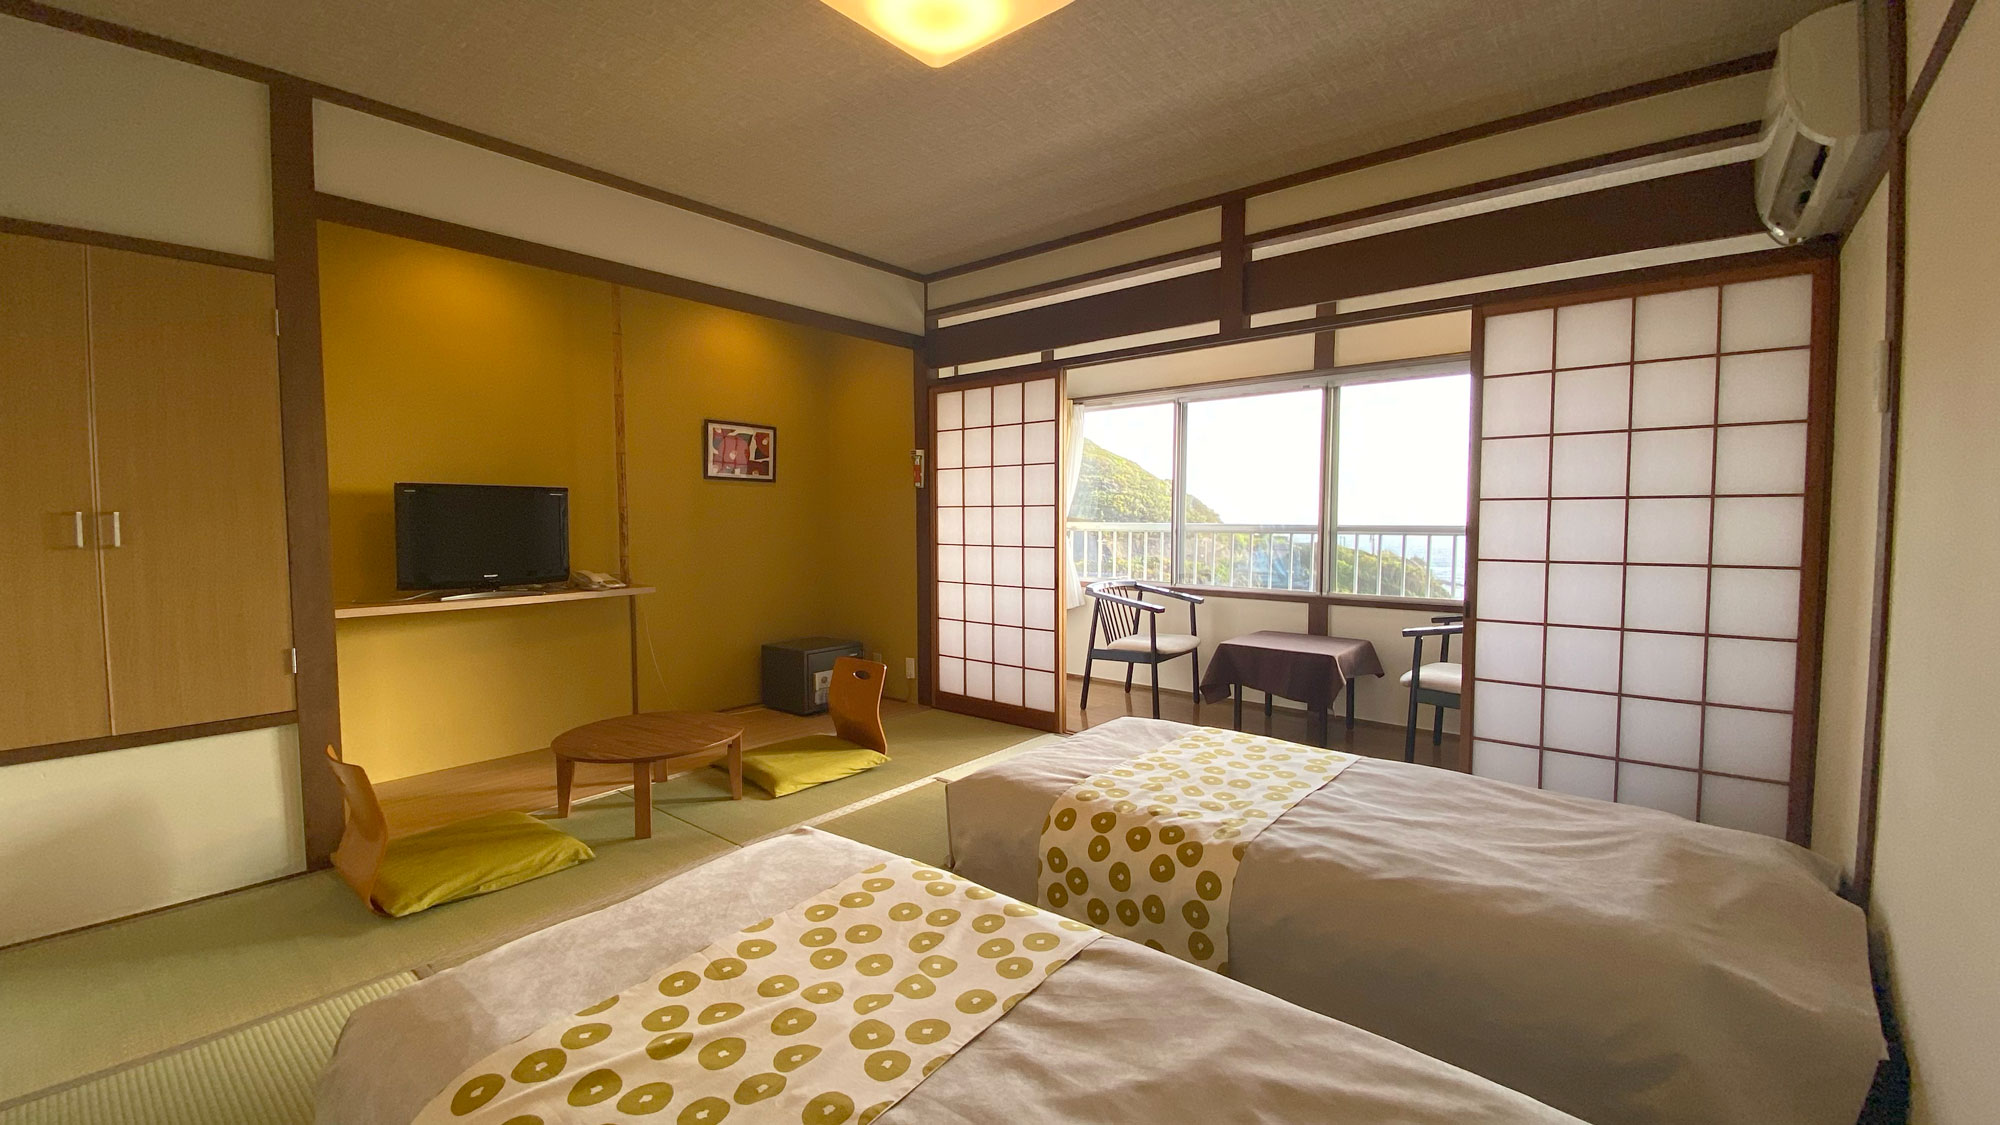 ー 和（なごみ）の間 ーテーマは「リラックス」心が和む黄色や茶色を基調とした温かみのある客室